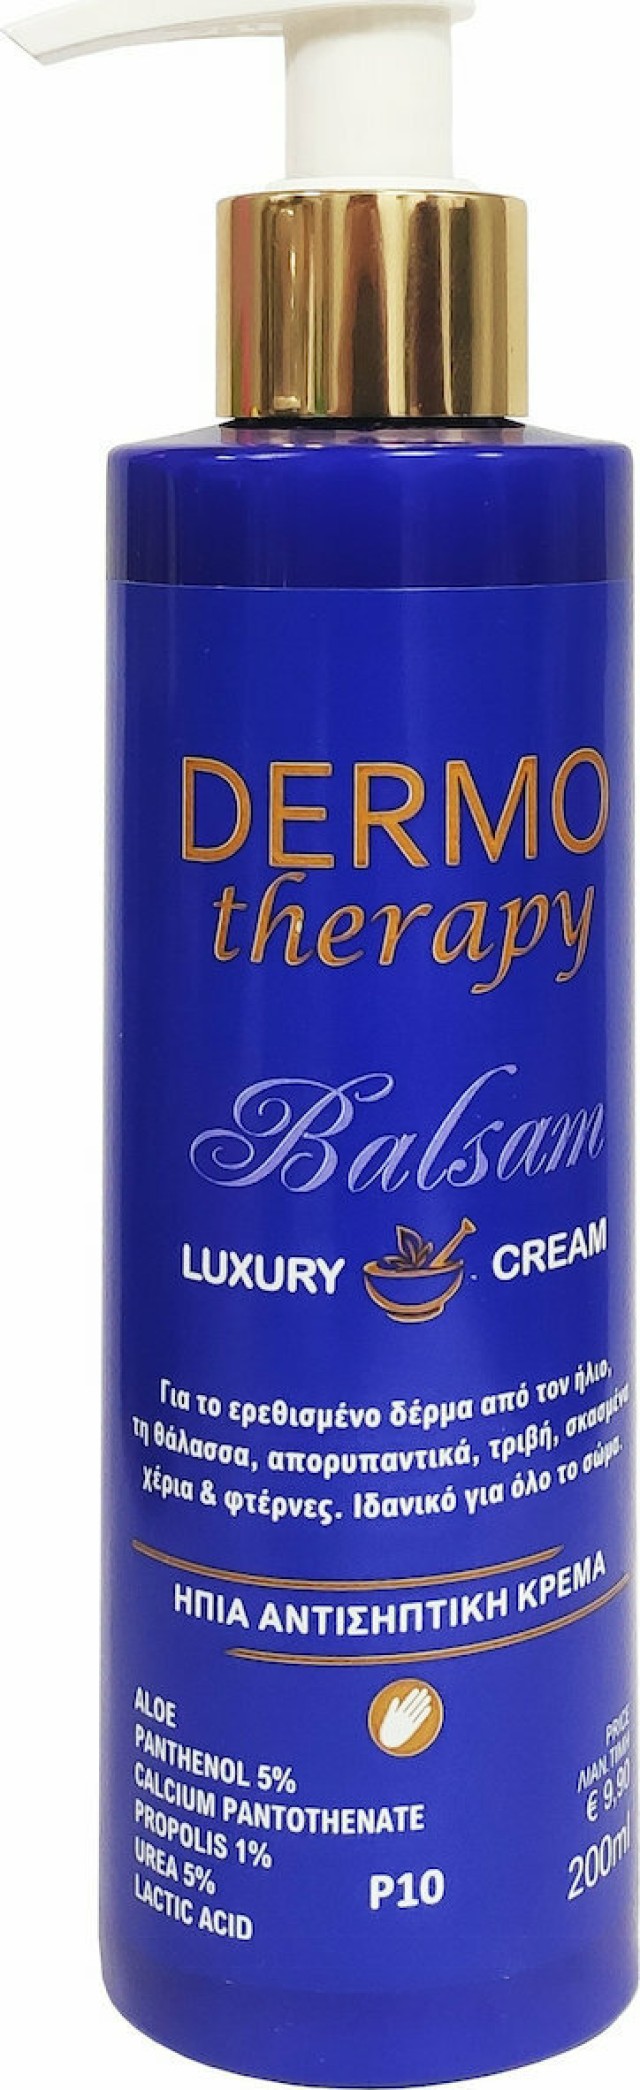 Erythro Forte Dermo Therapy Balsam Luxury Cream Ήπια Αντισηπτική Κρέμα Με Αλόη Για Το Ερεθισμένο Δέρμα 200ml